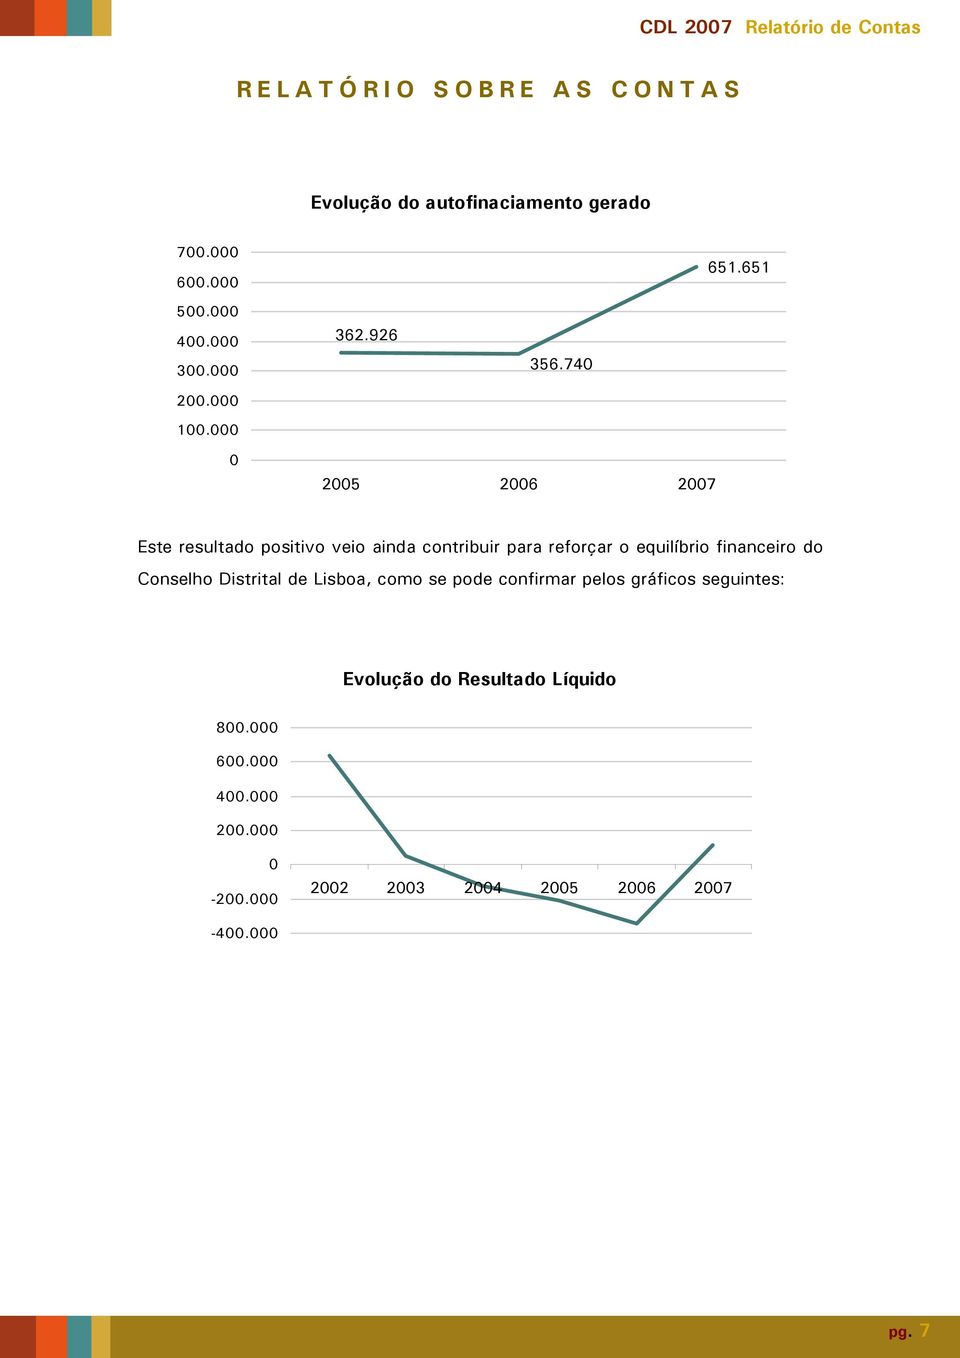 equilíbrio financeiro do Conselho Distrital de Lisboa, como se pode confirmar